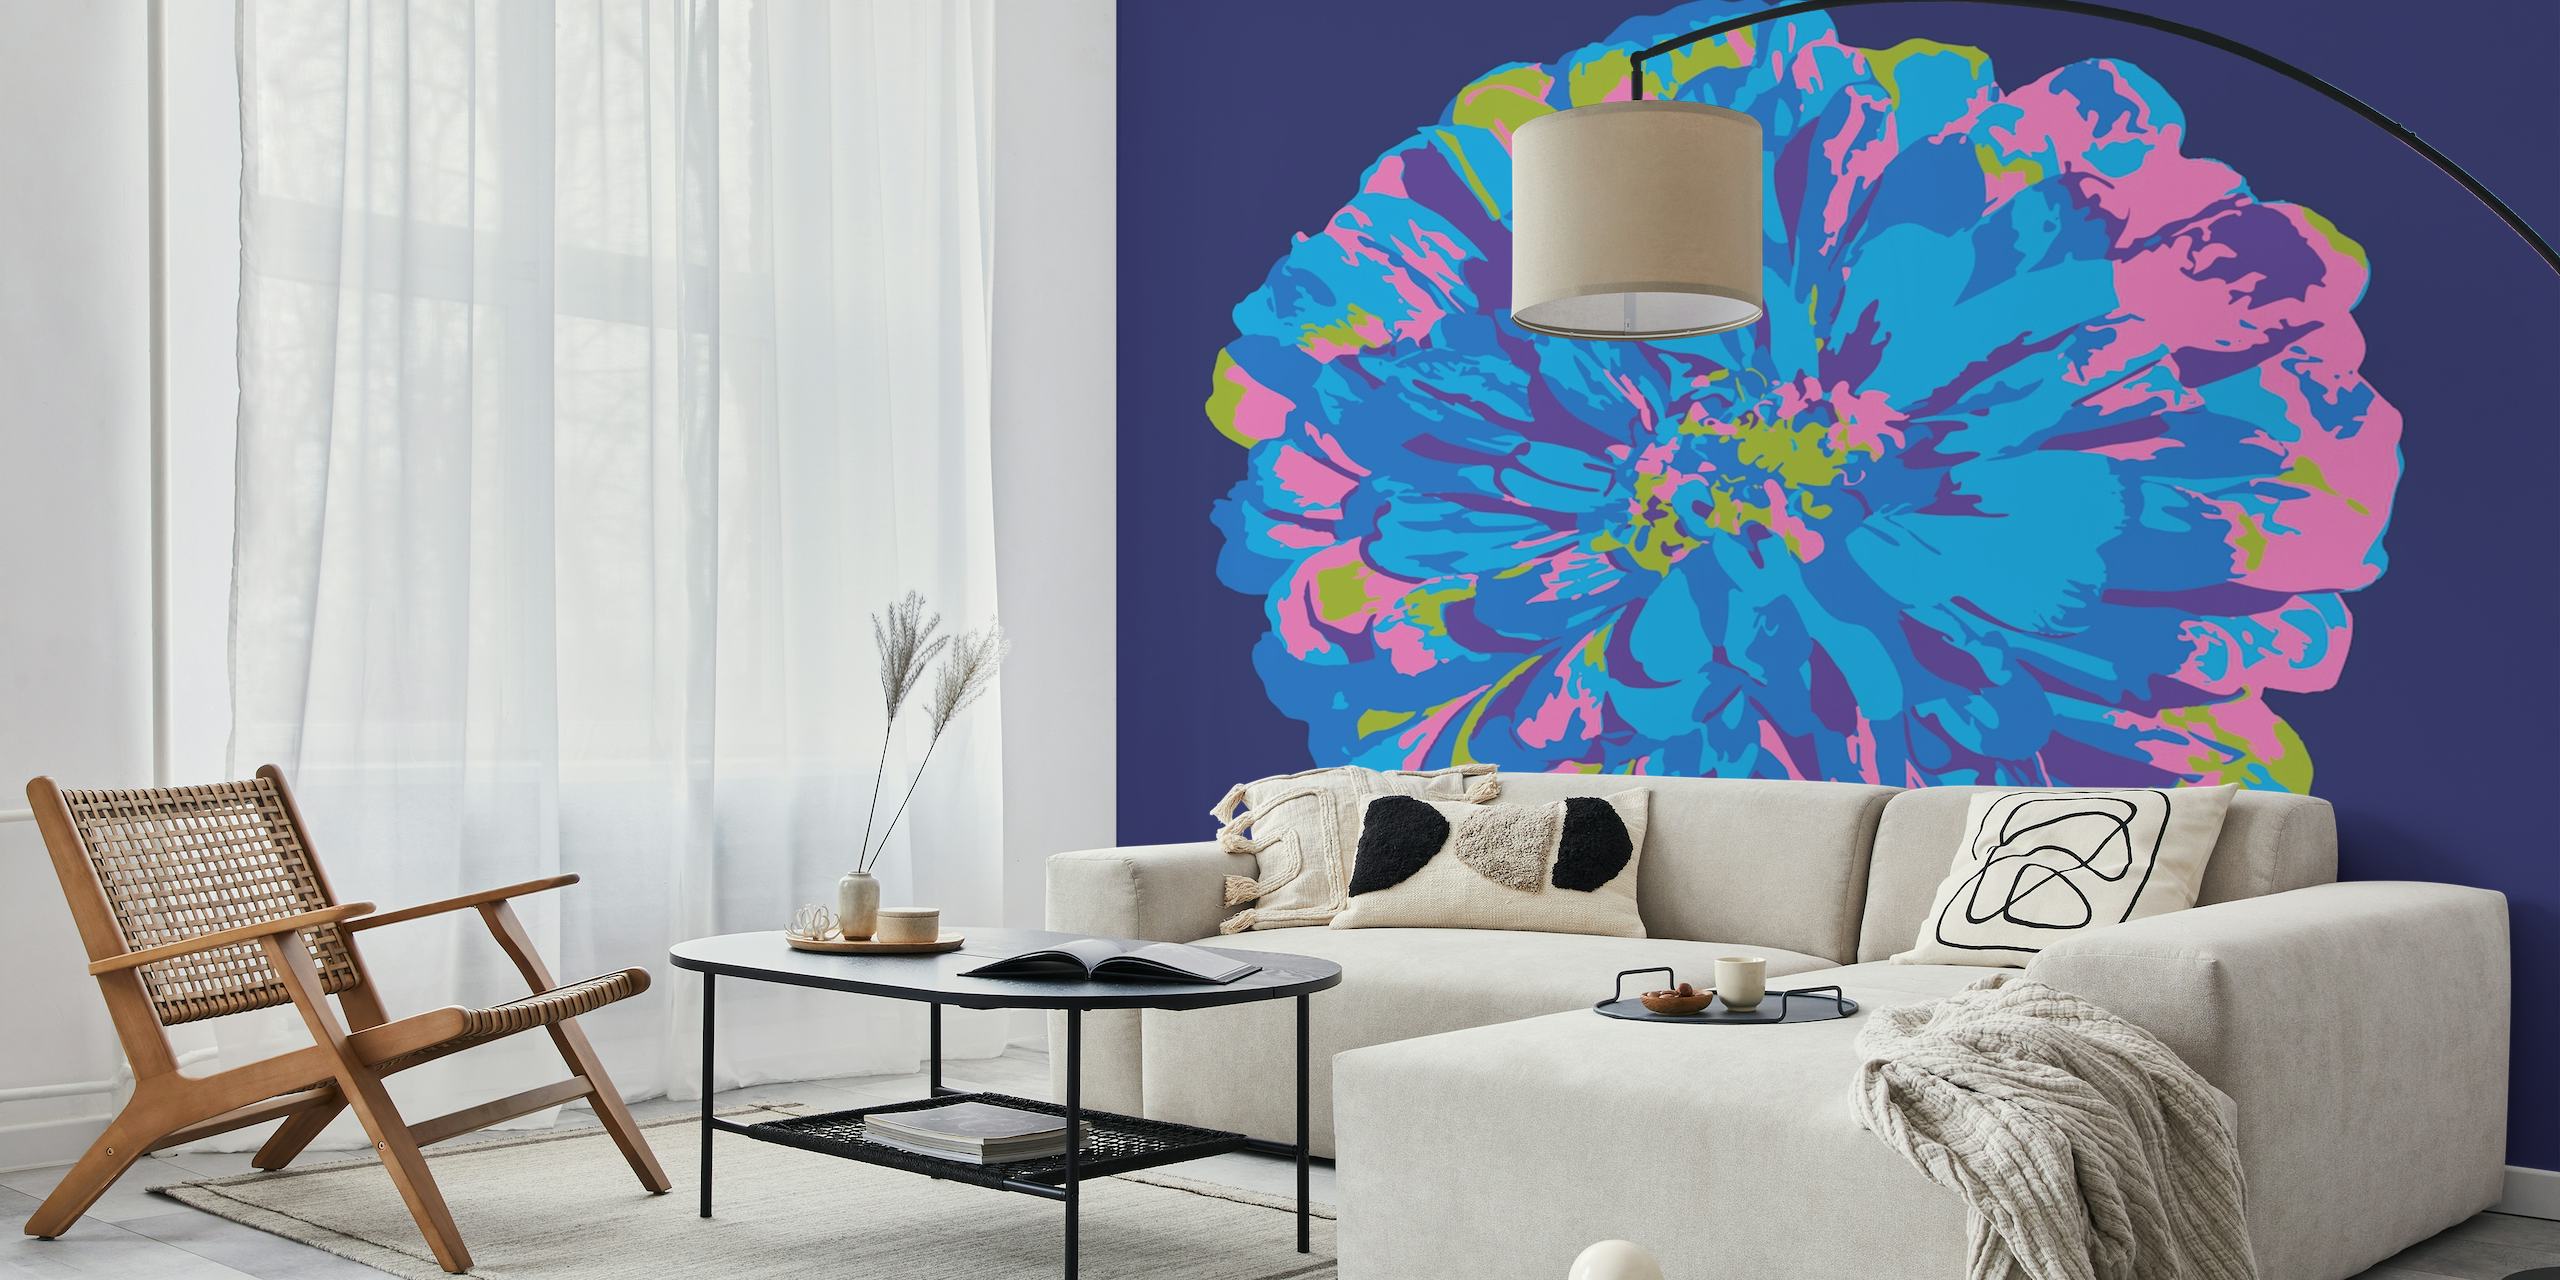 Papier peint mural chrysanthème rose et turquoise vibrant sur fond bleu foncé